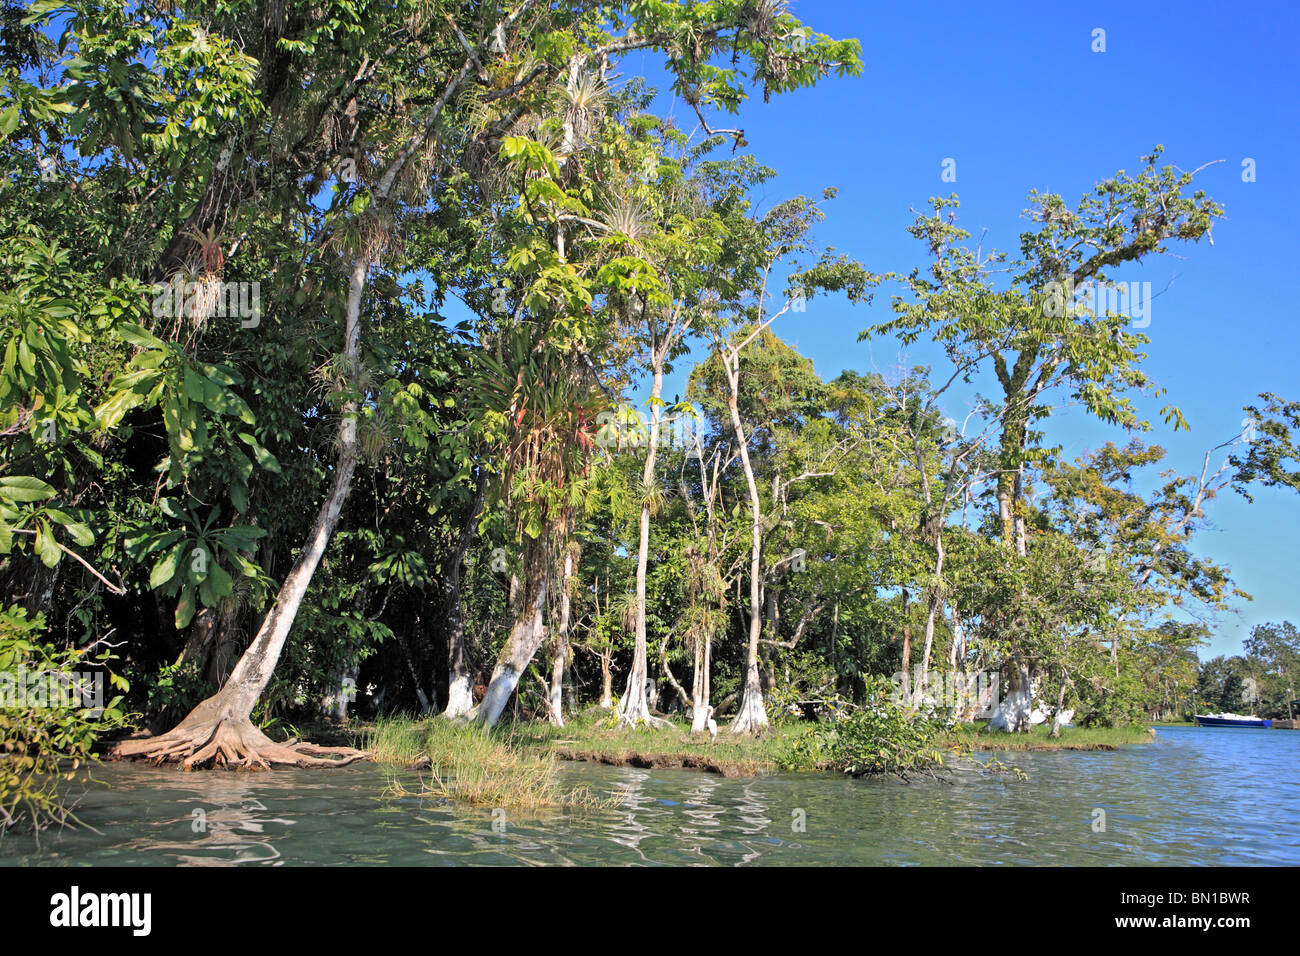 Dulce river, Guatemala Stock Photo